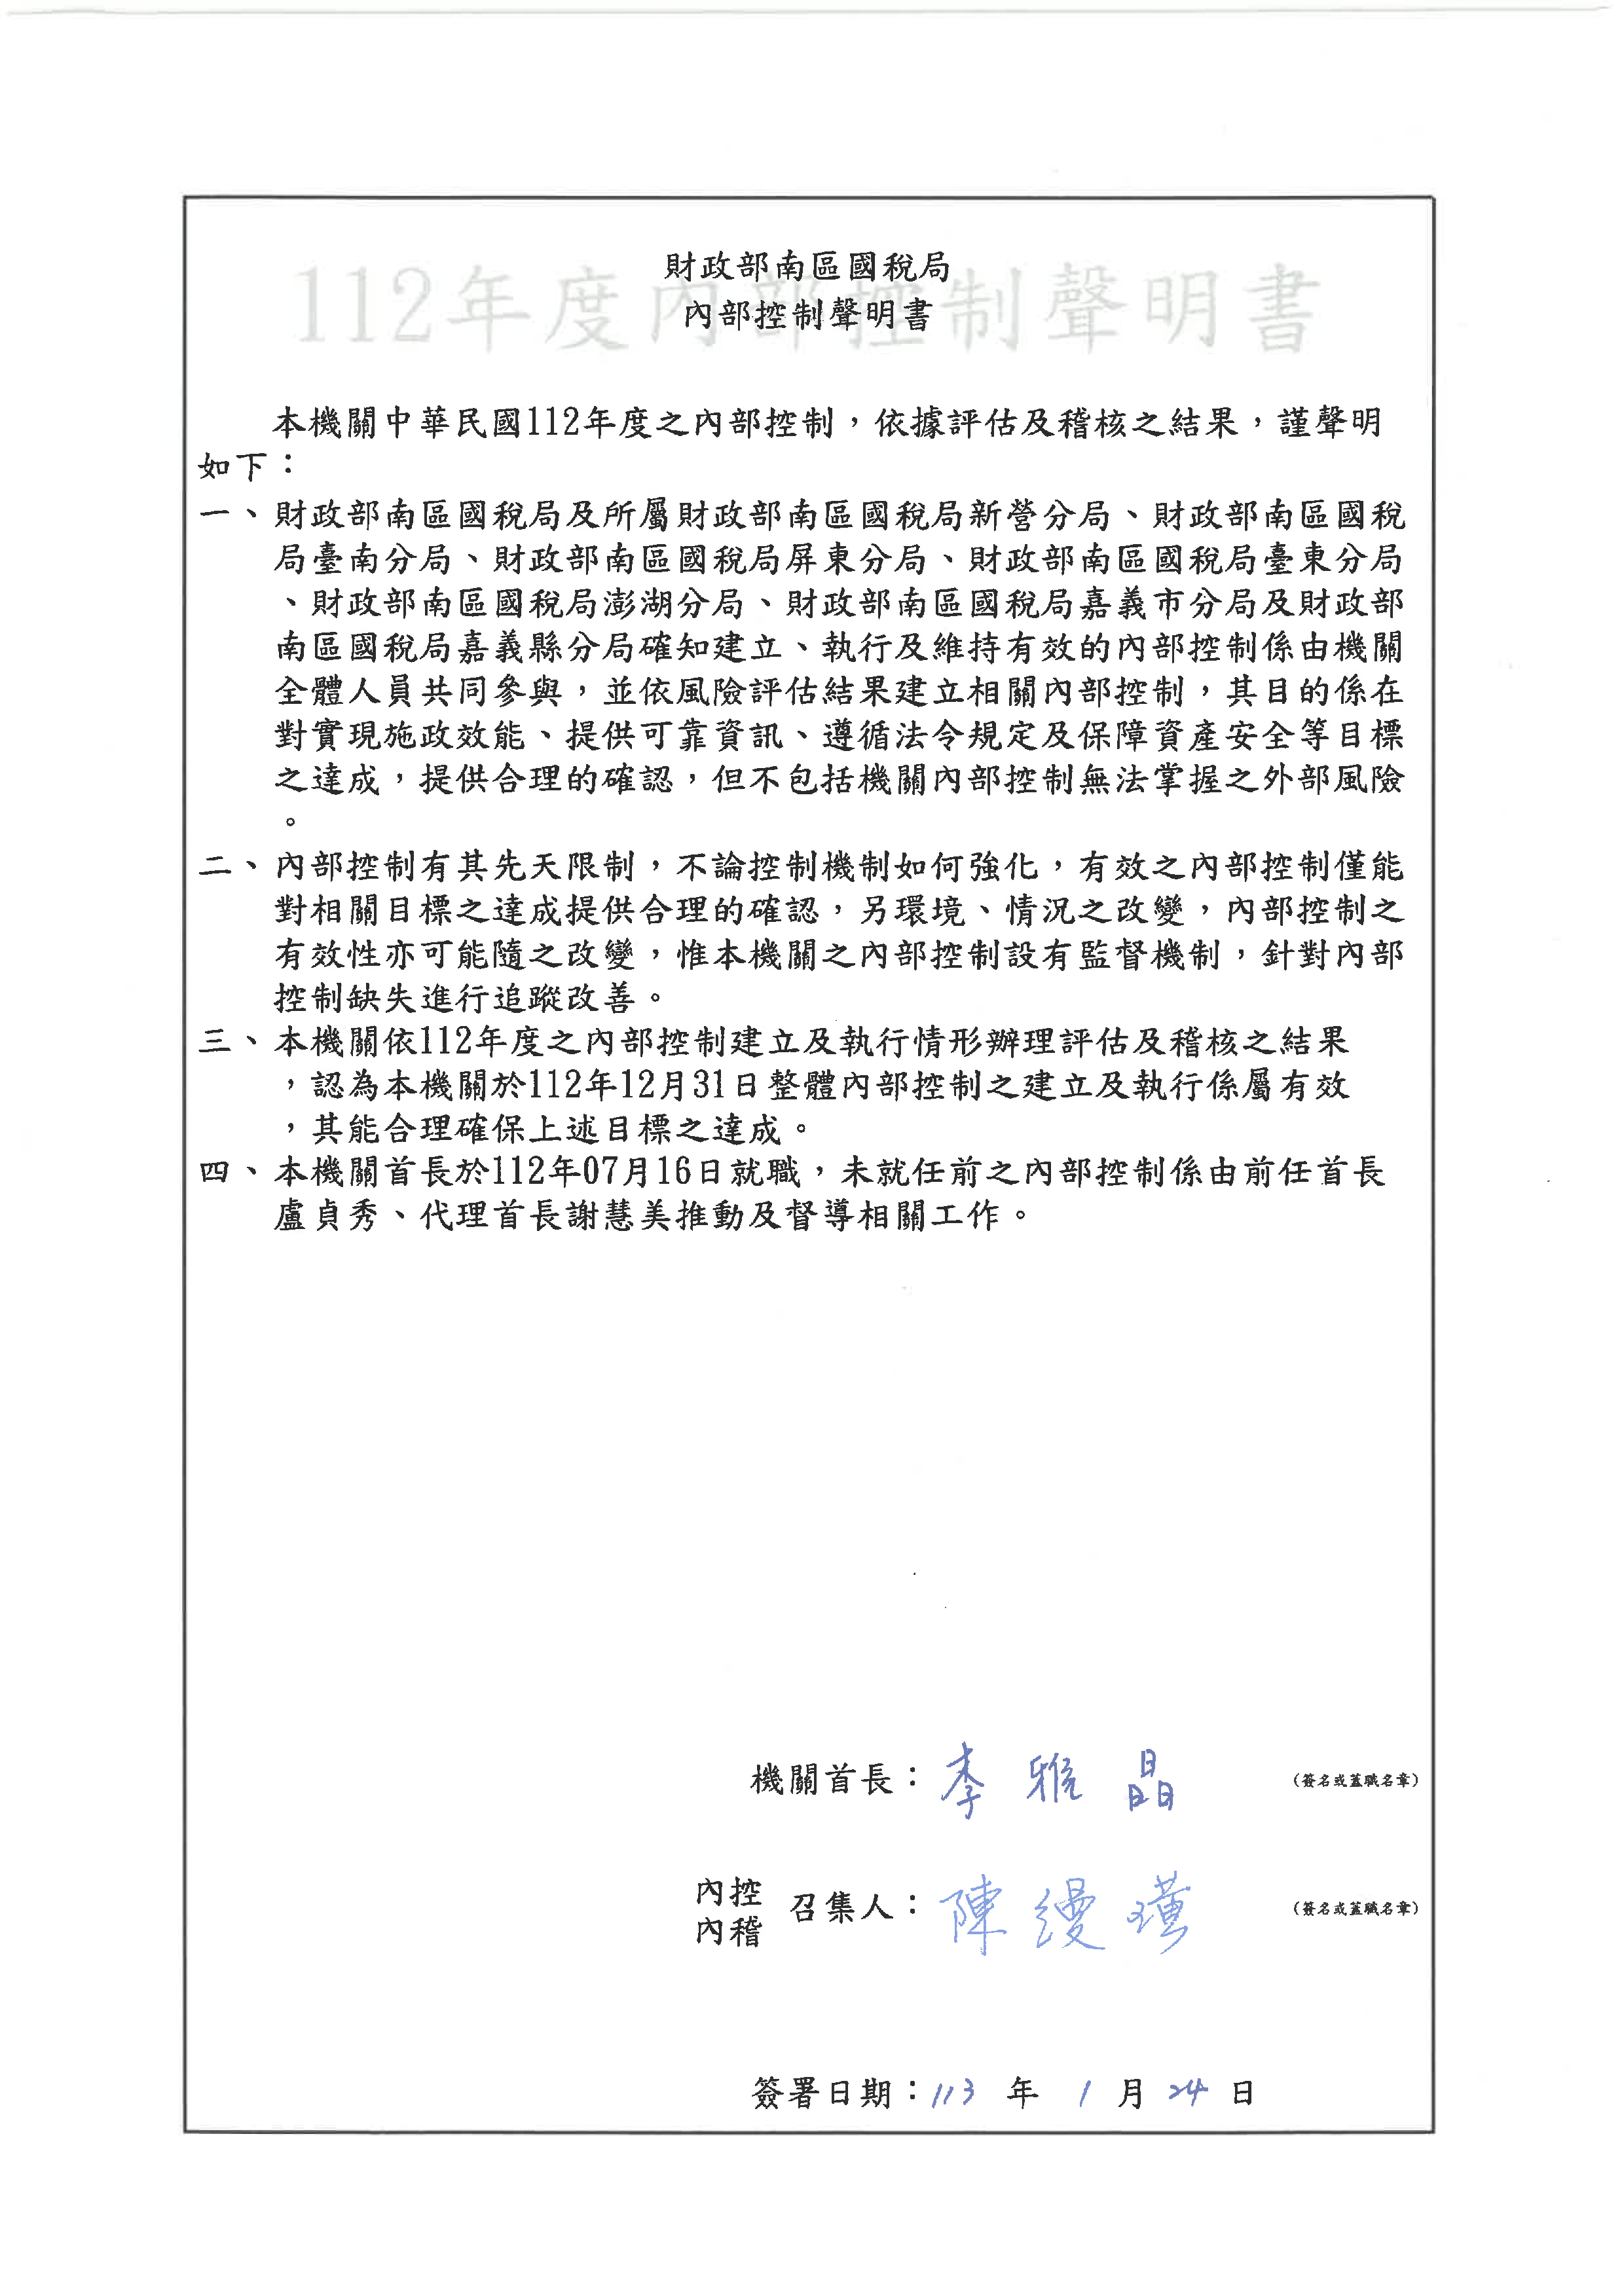 財政部南區國稅局111年度內部控制聲明書中文版圖檔說明如上述